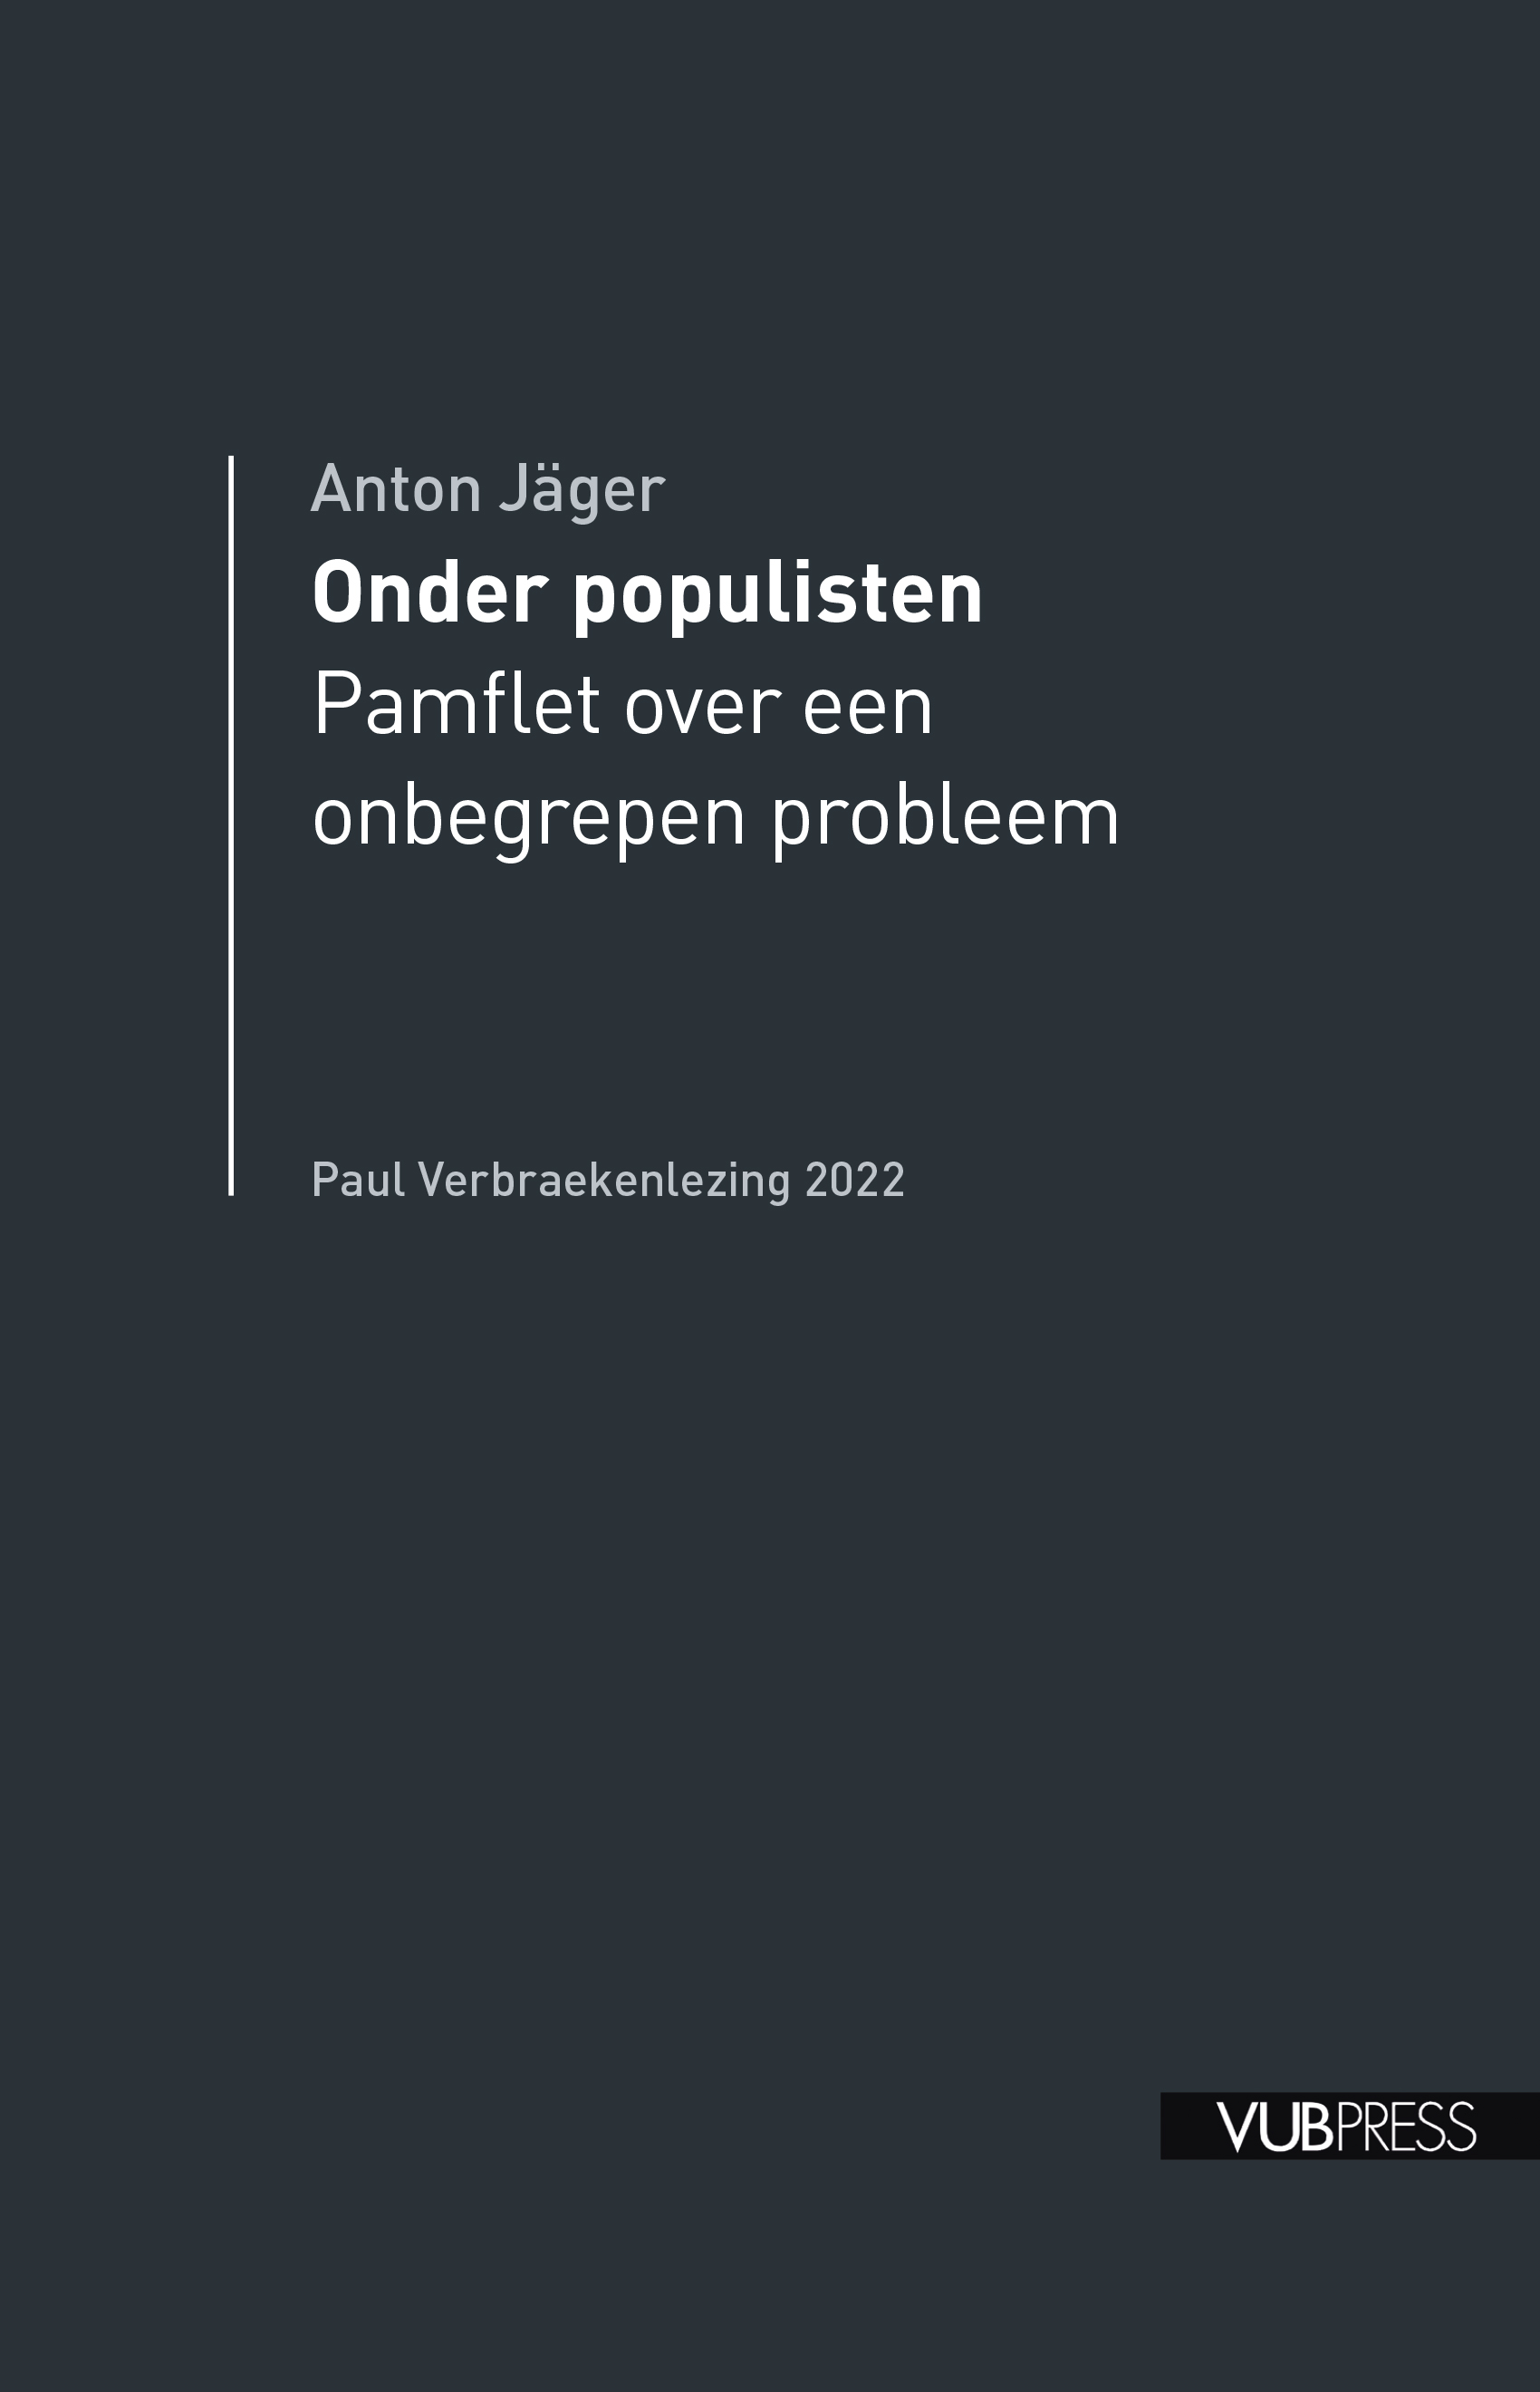 ONDER POPULISTEN (PAUL VERBRAEKENLEZING 2022)